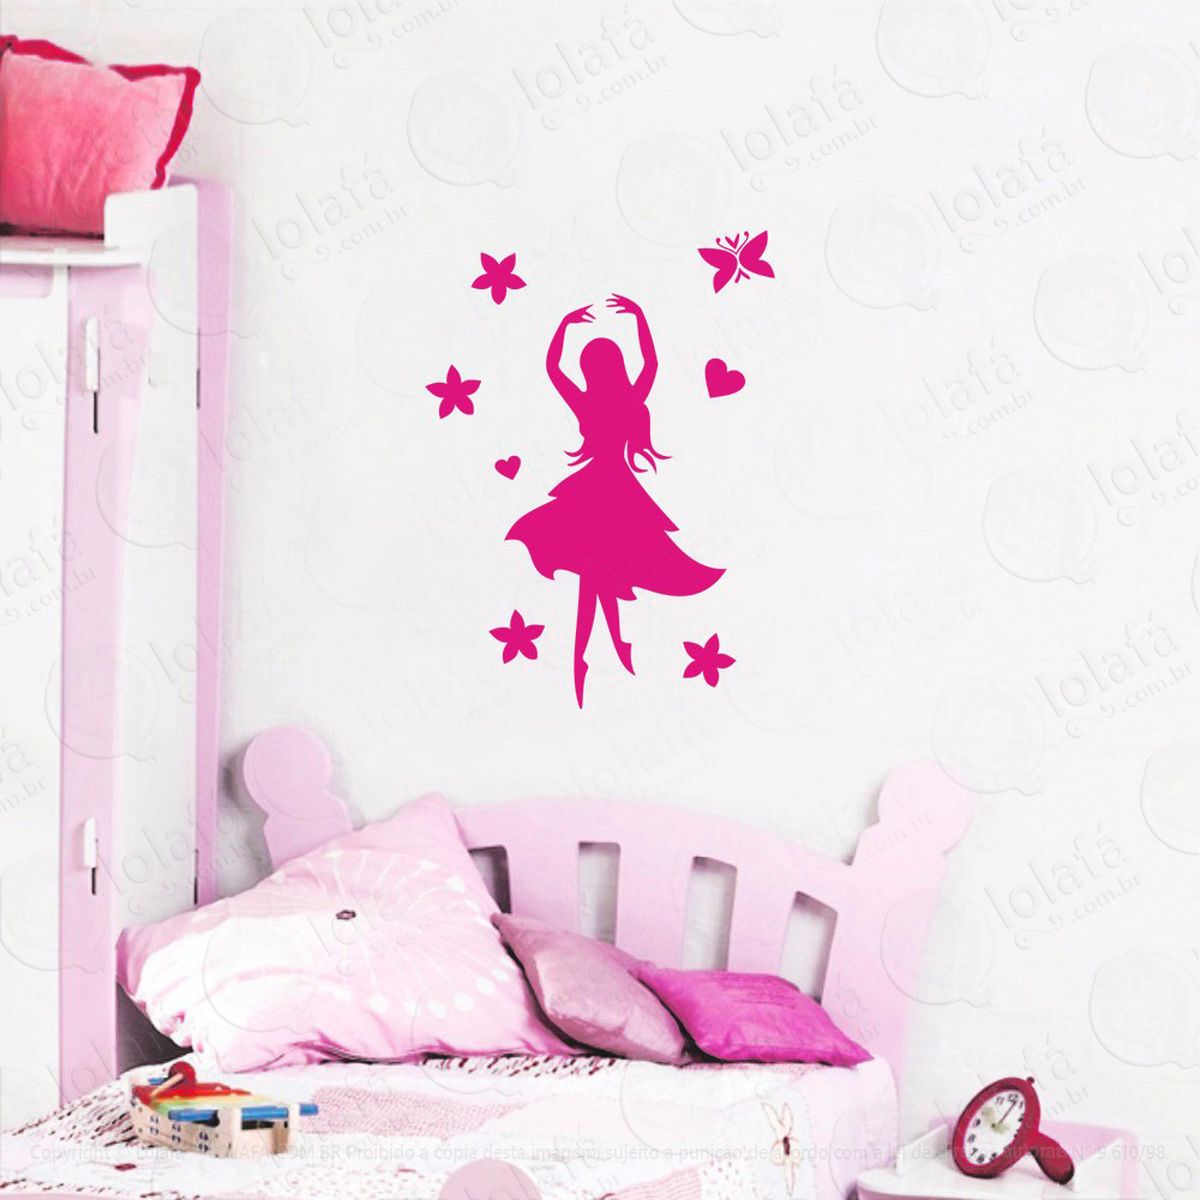 princesa adesivo de parede infantil para quarto - mod:1